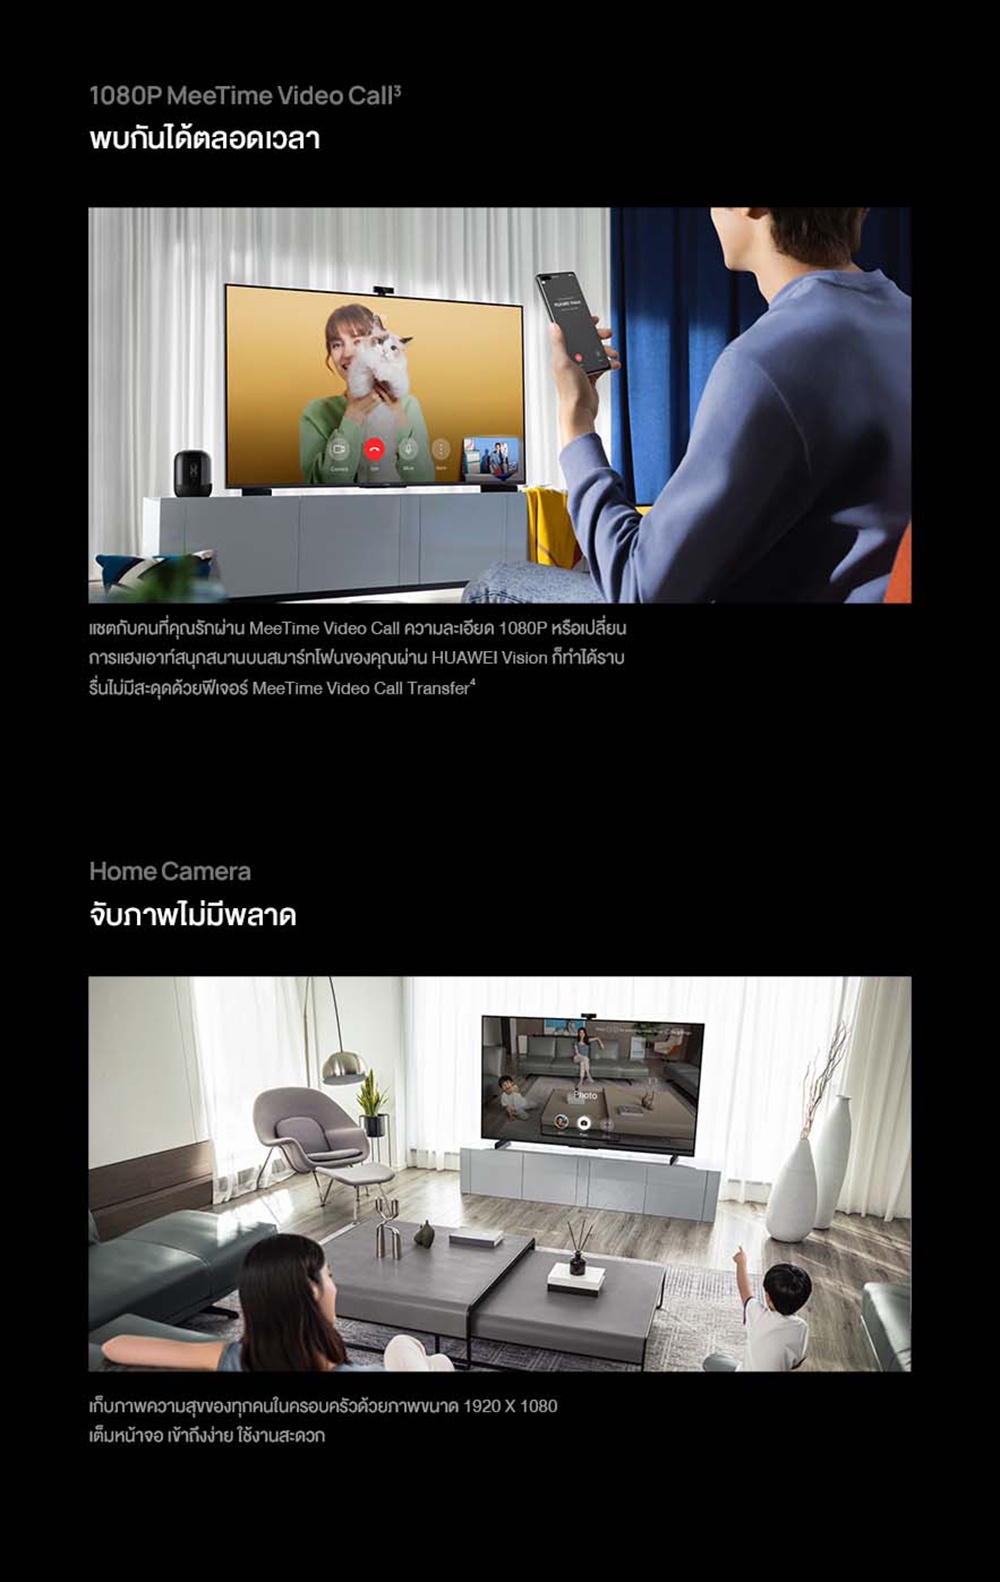 ลองดูภาพสินค้า HUAWEI UHD ทีวี 55 นิ้ว รุ่น VISION-S-HD55KAN9A(BK)-ON สีดำแถมฟรี HUAWEI TRUE ID TV BOX